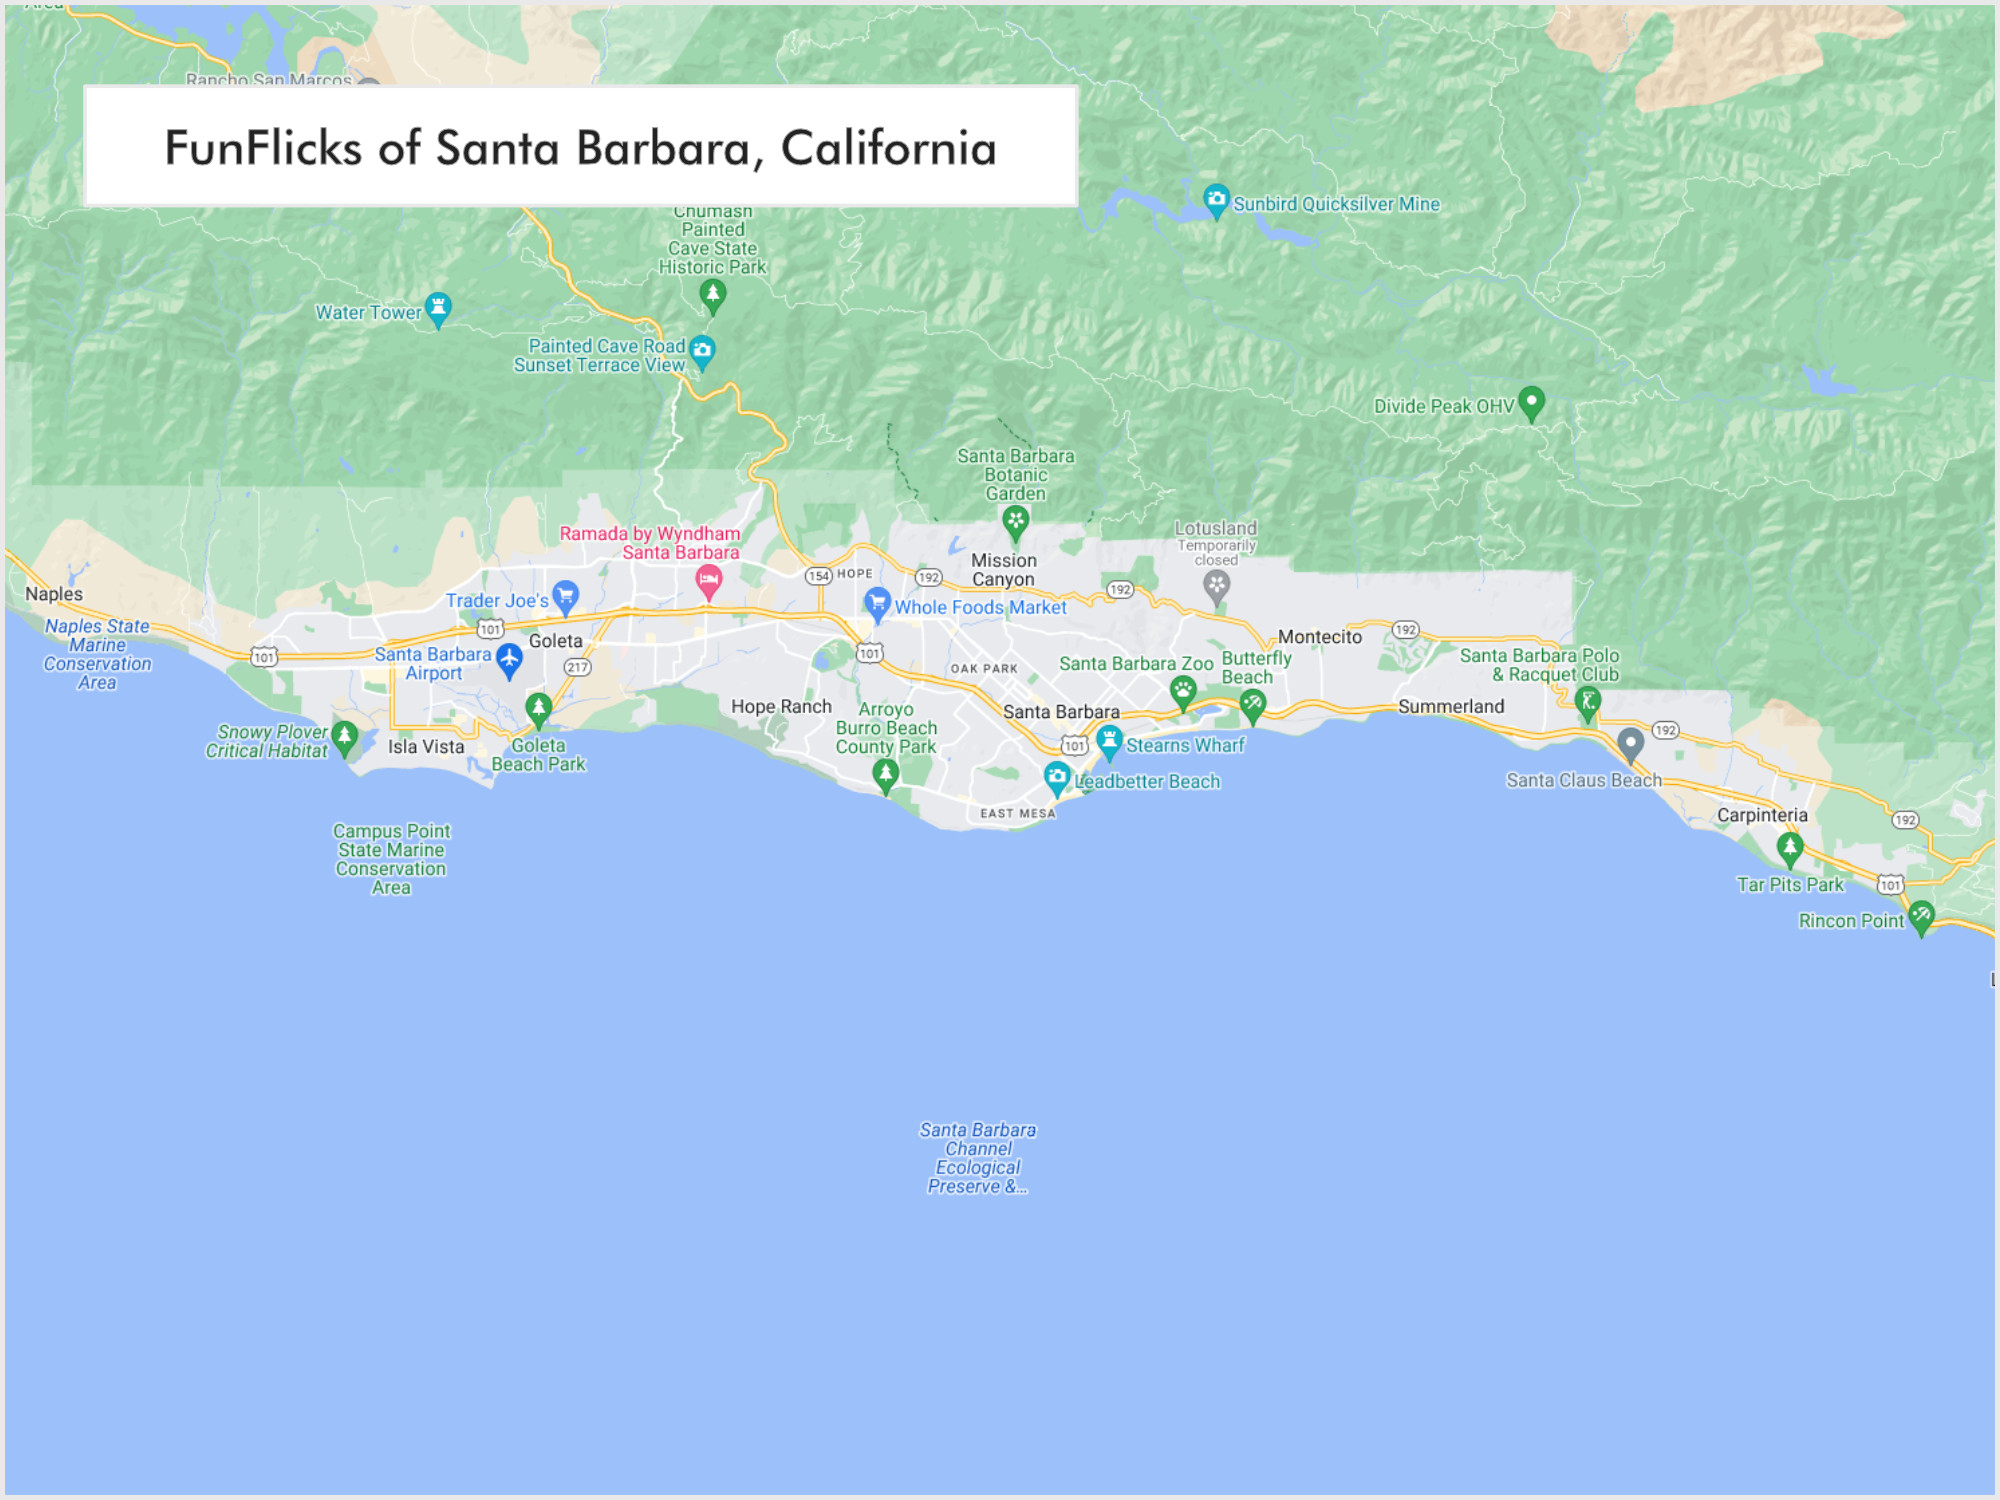 FunFlicks® Santa Barbara territory map